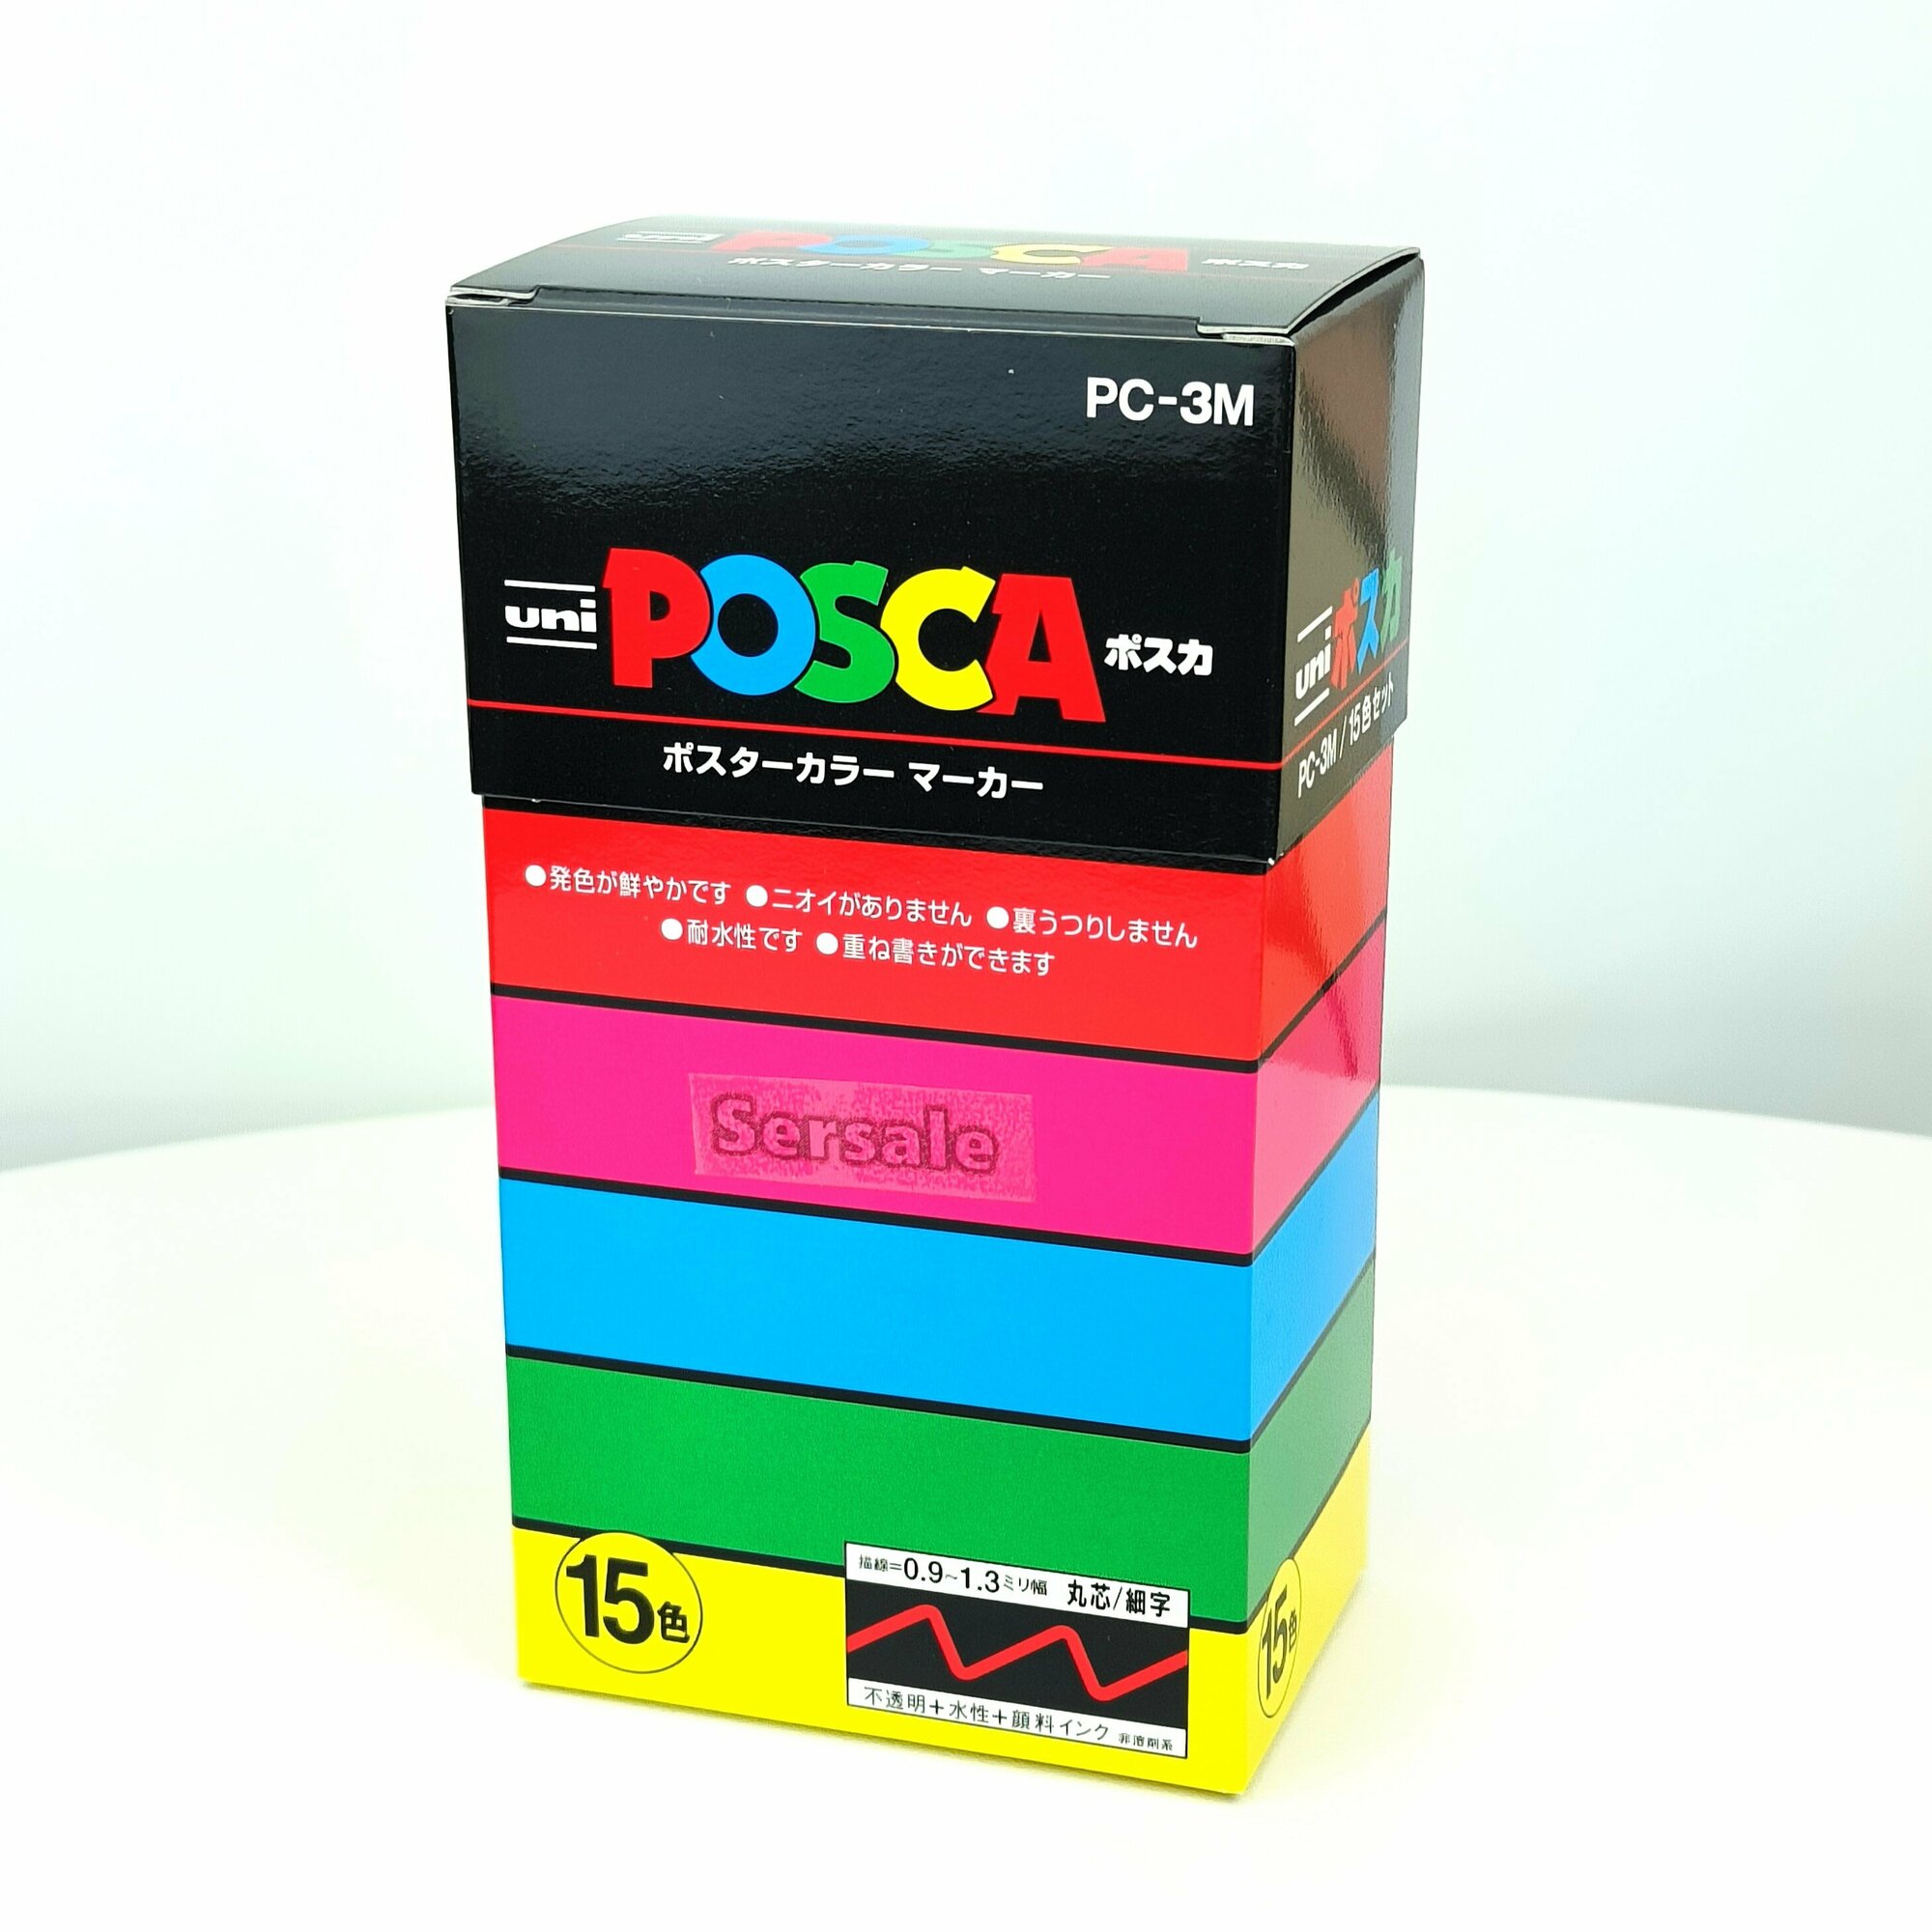 Маркеры UNI Posca PC-3M набор из 15 стандартных цветов толщина 0,9-1,3мм